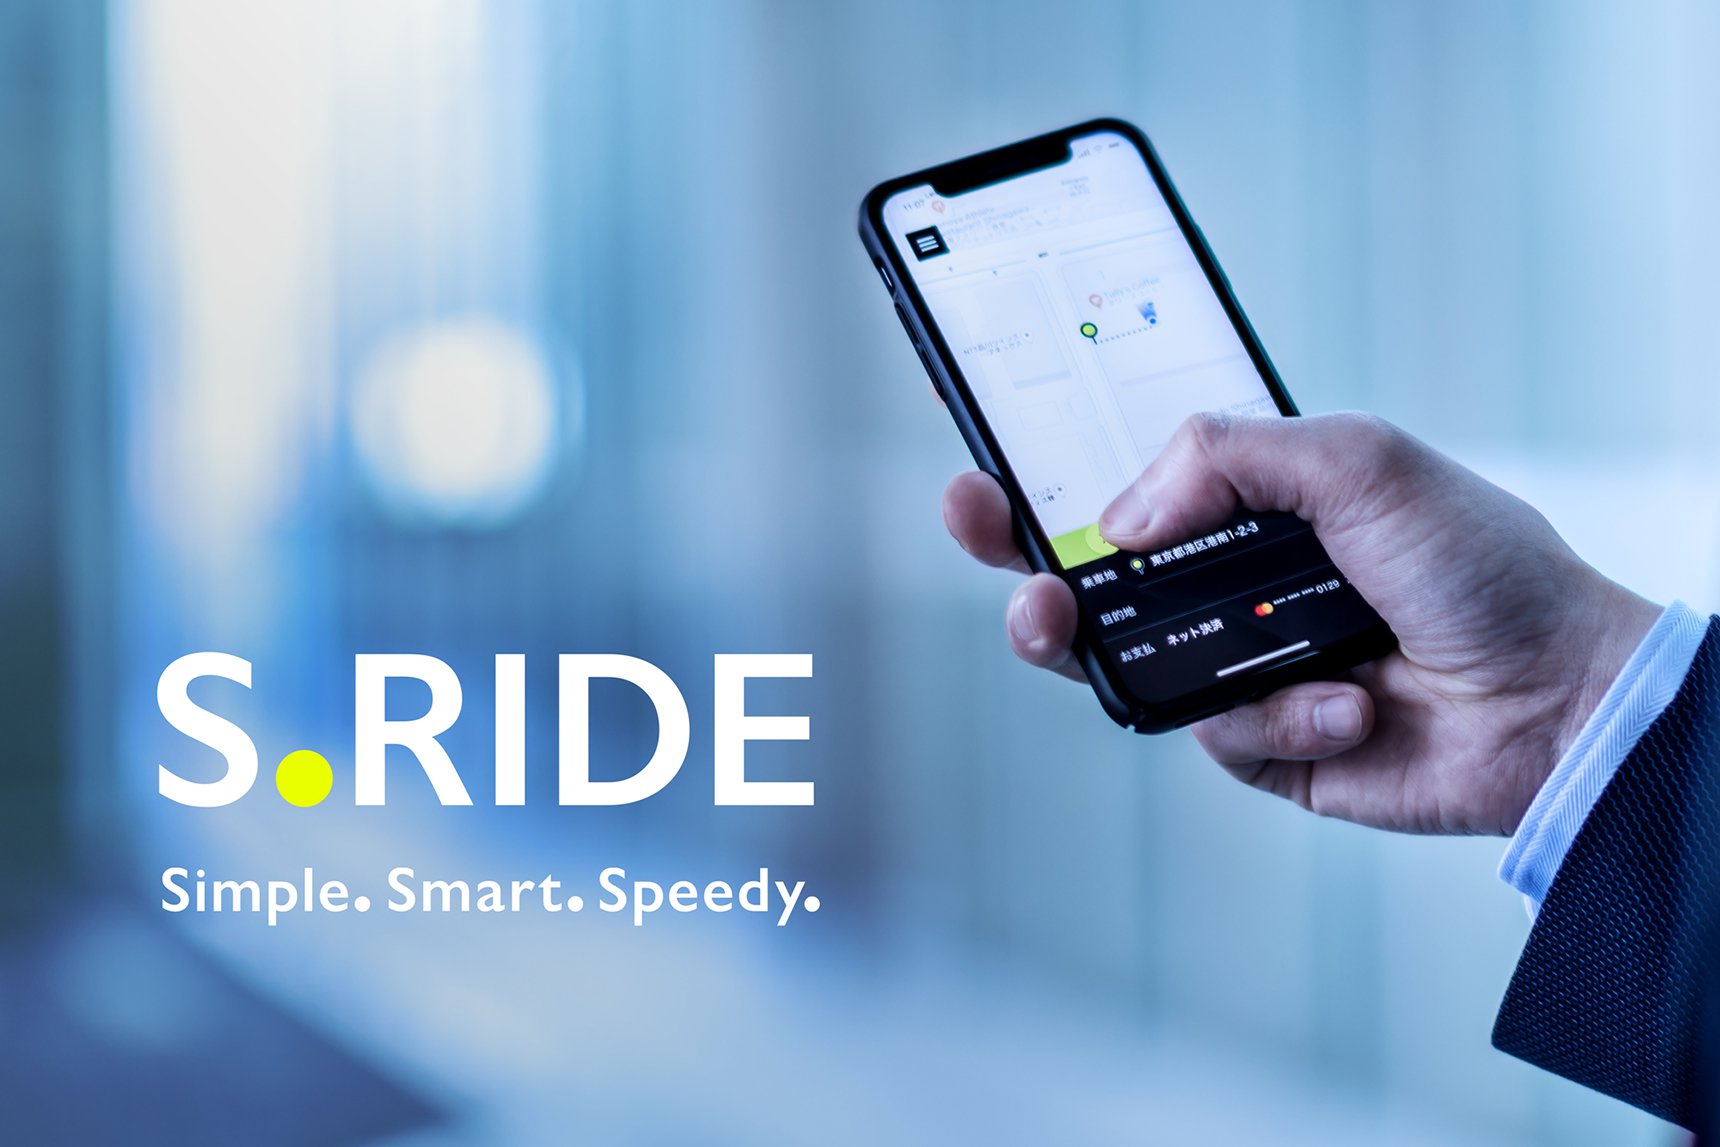 東京都内最大級のタクシー配車サービス、S.RIDE（エスライド）の提供を開始しました。